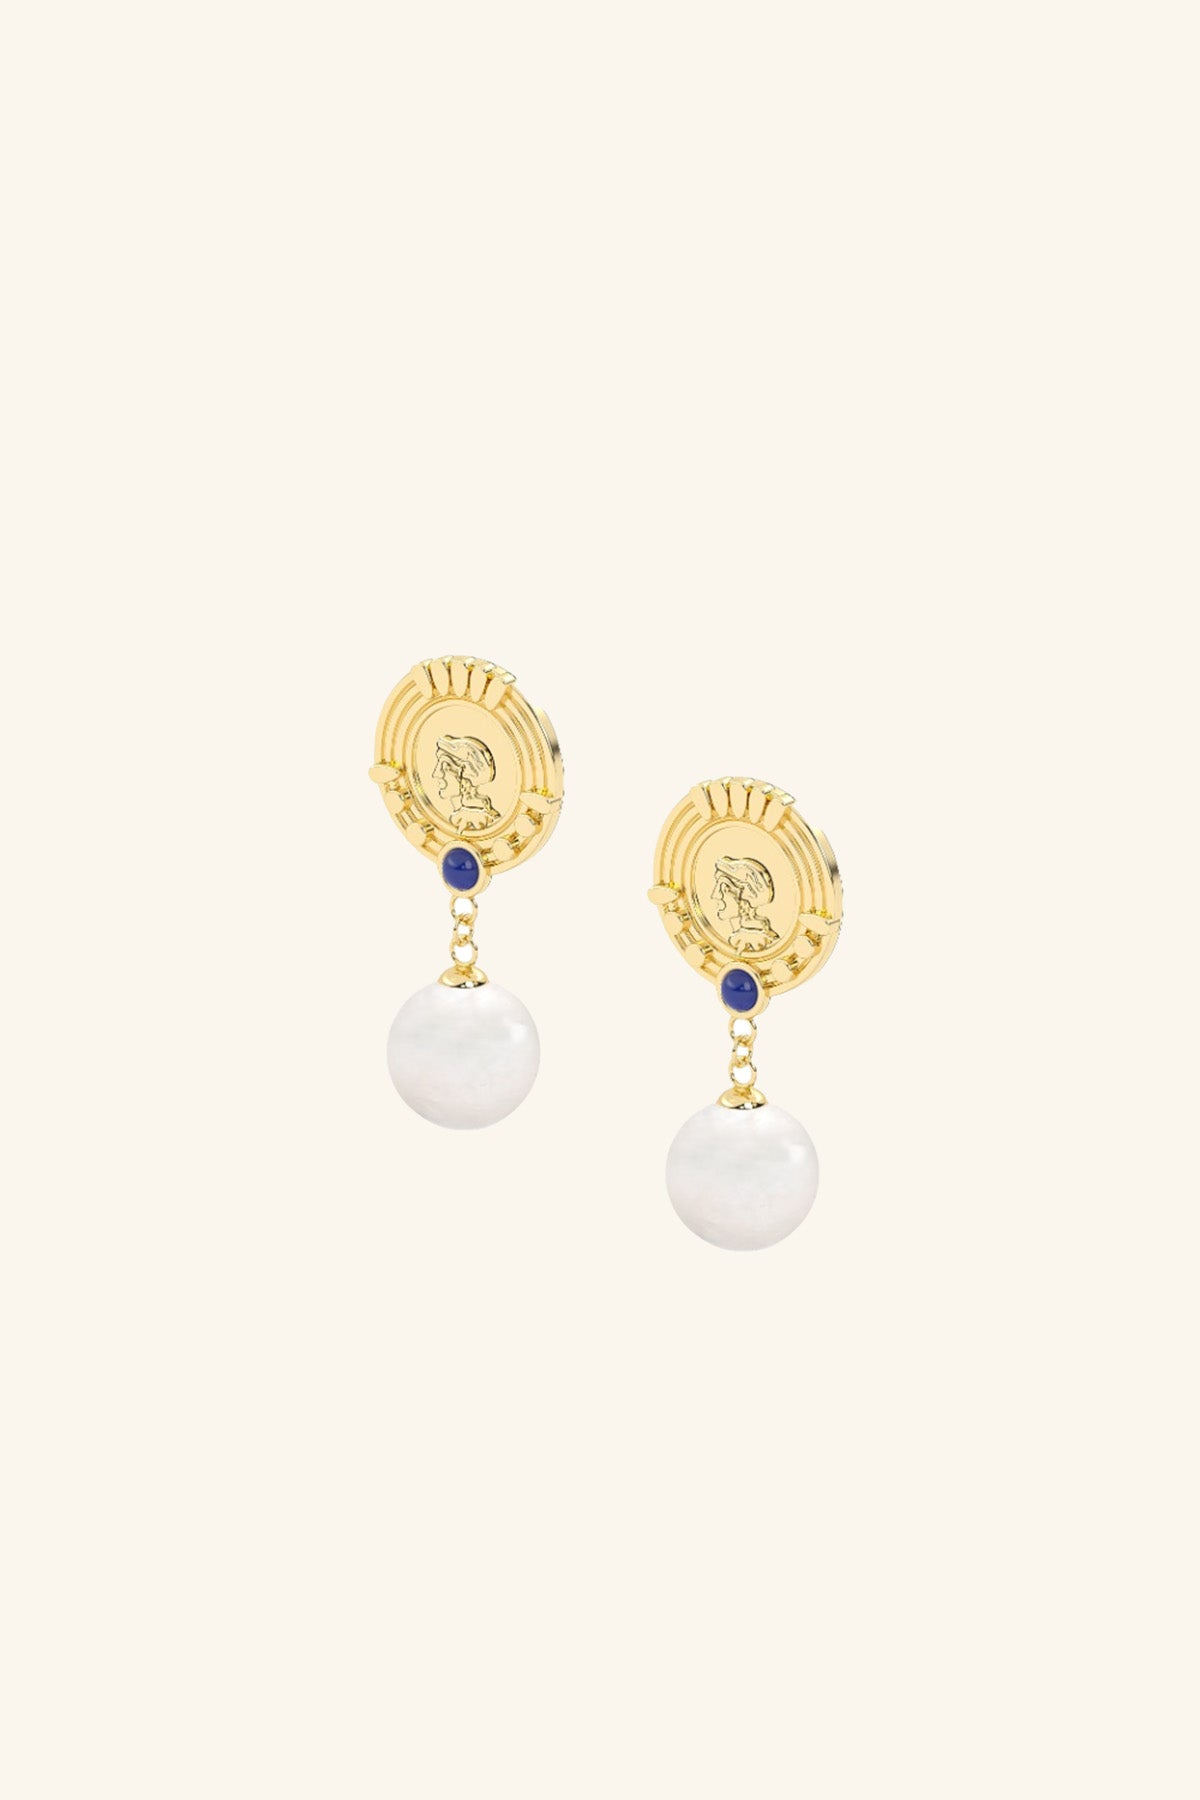 Veii Coin Earrings - Jewelry - Velvet Heart Clothing